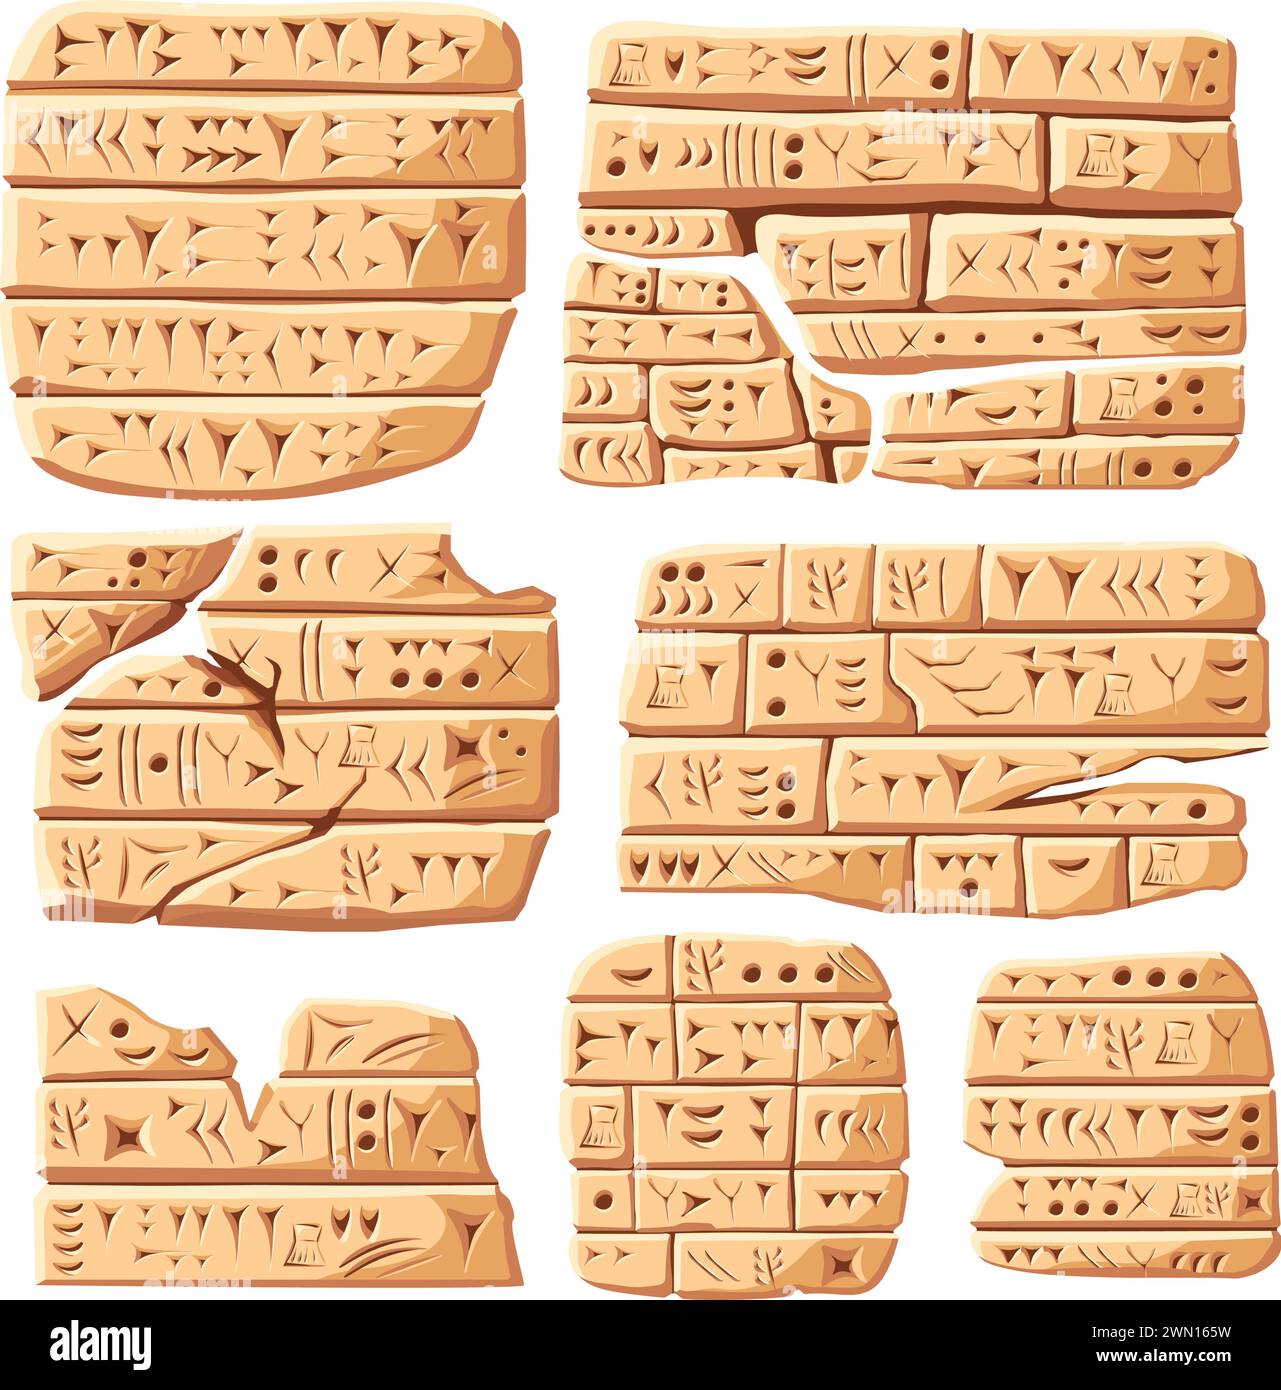 Cuneiforme. Antica iscrizione, antica scrittura sumera intagliata su piastrelle di pietra o argilla, simbolo numerico e tavoletta di mesopotamia babilonese illustrazione vettoriale dell'iscrizione cuneiforme mesopotamia Illustrazione Vettoriale